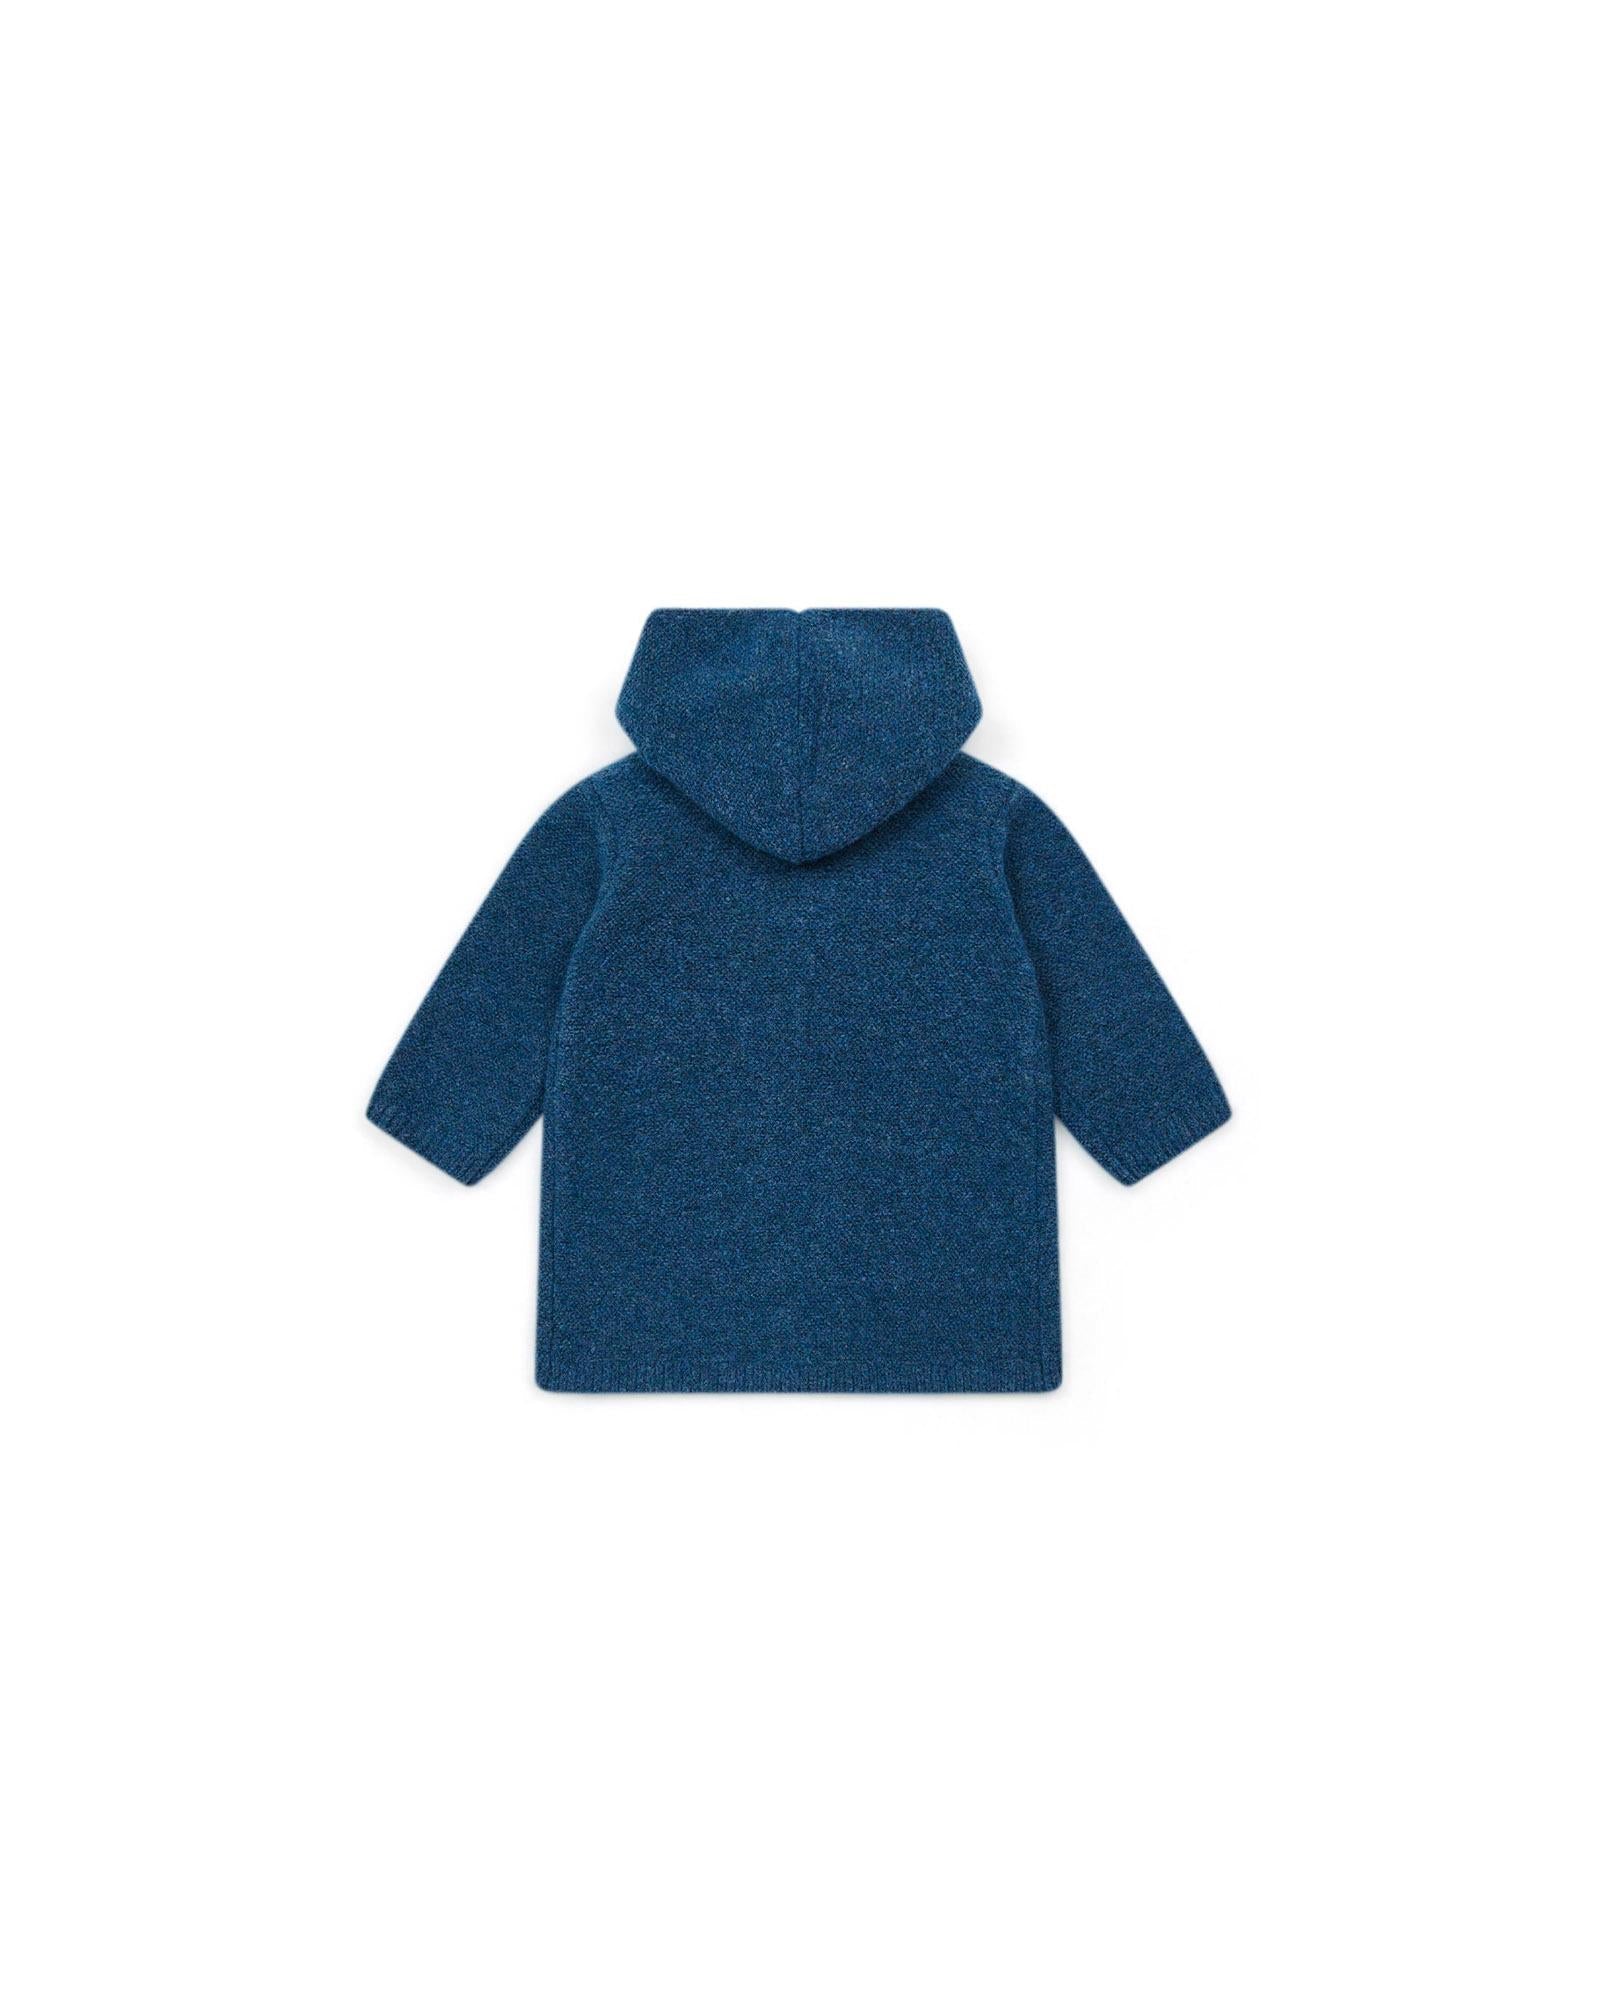 Manteau Miro bleu Bébé en tricot point mousse